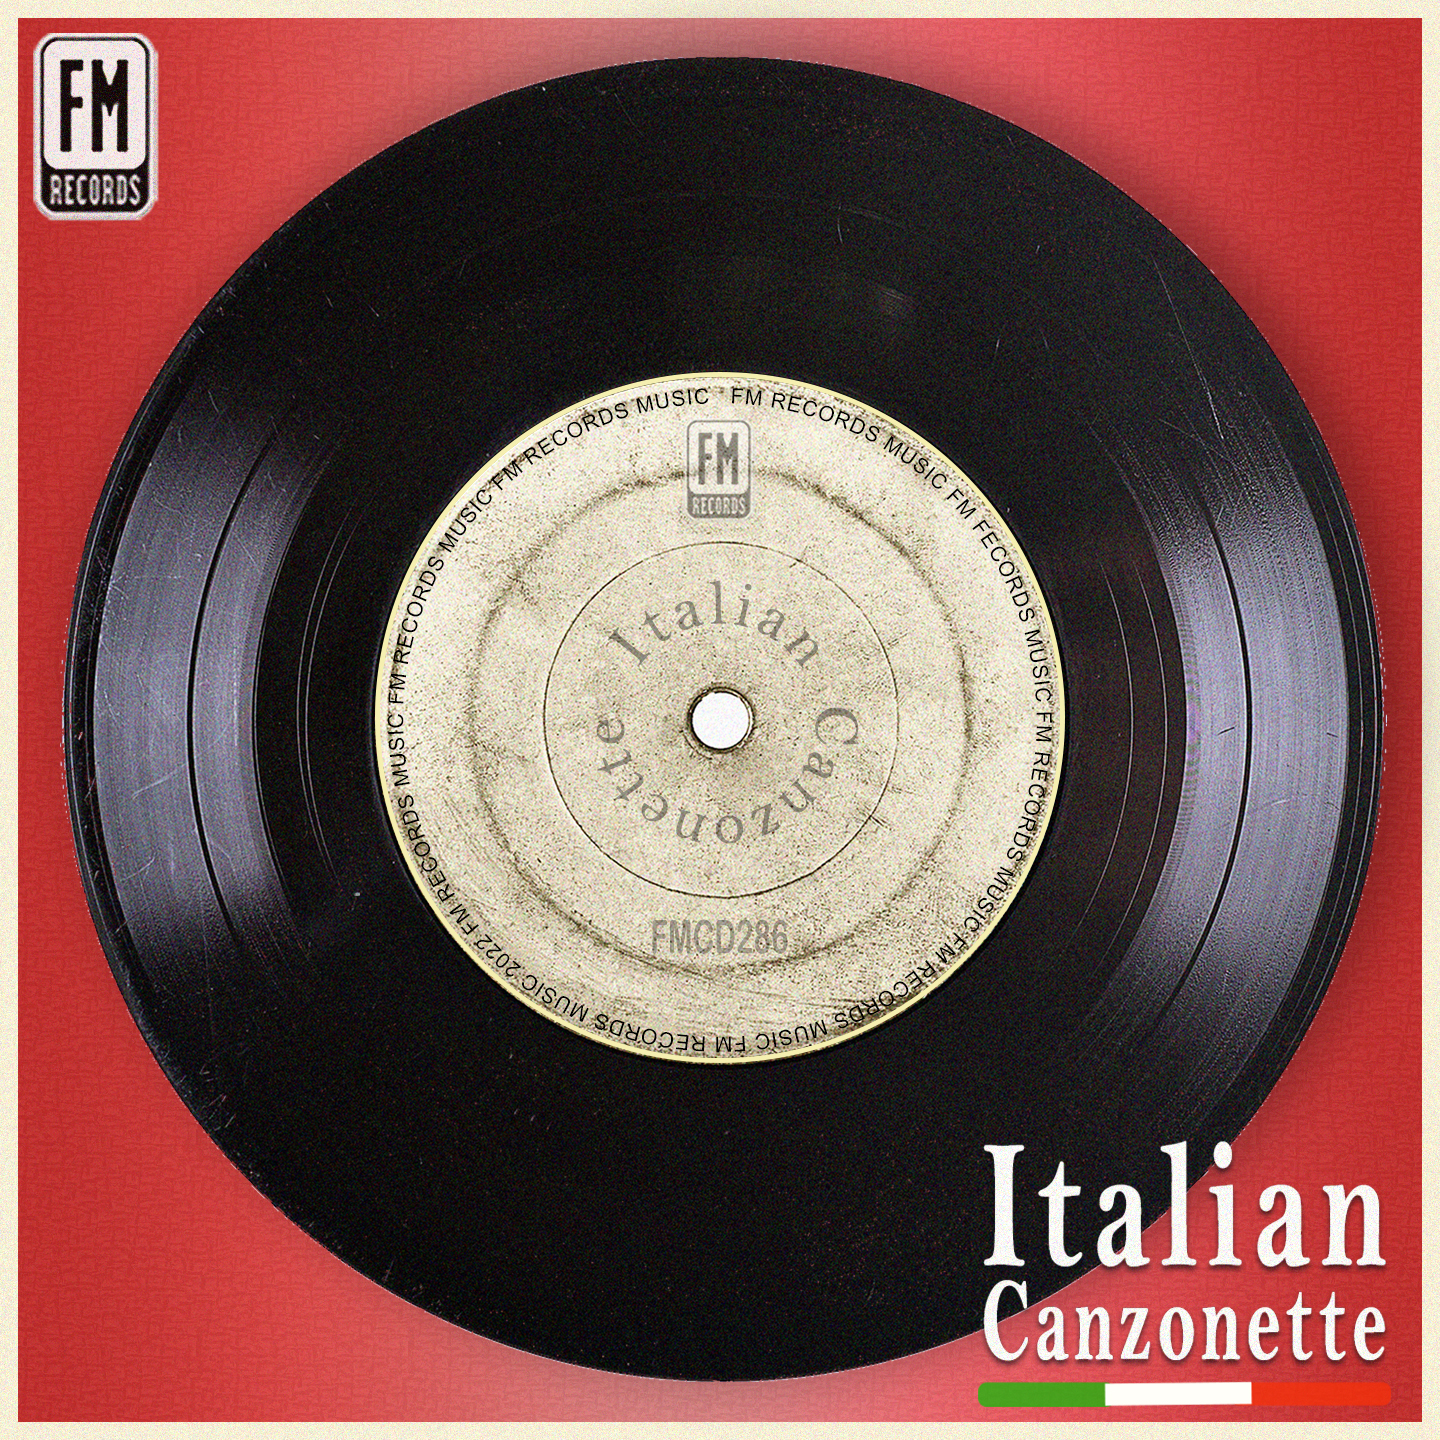 Italian Canzonette